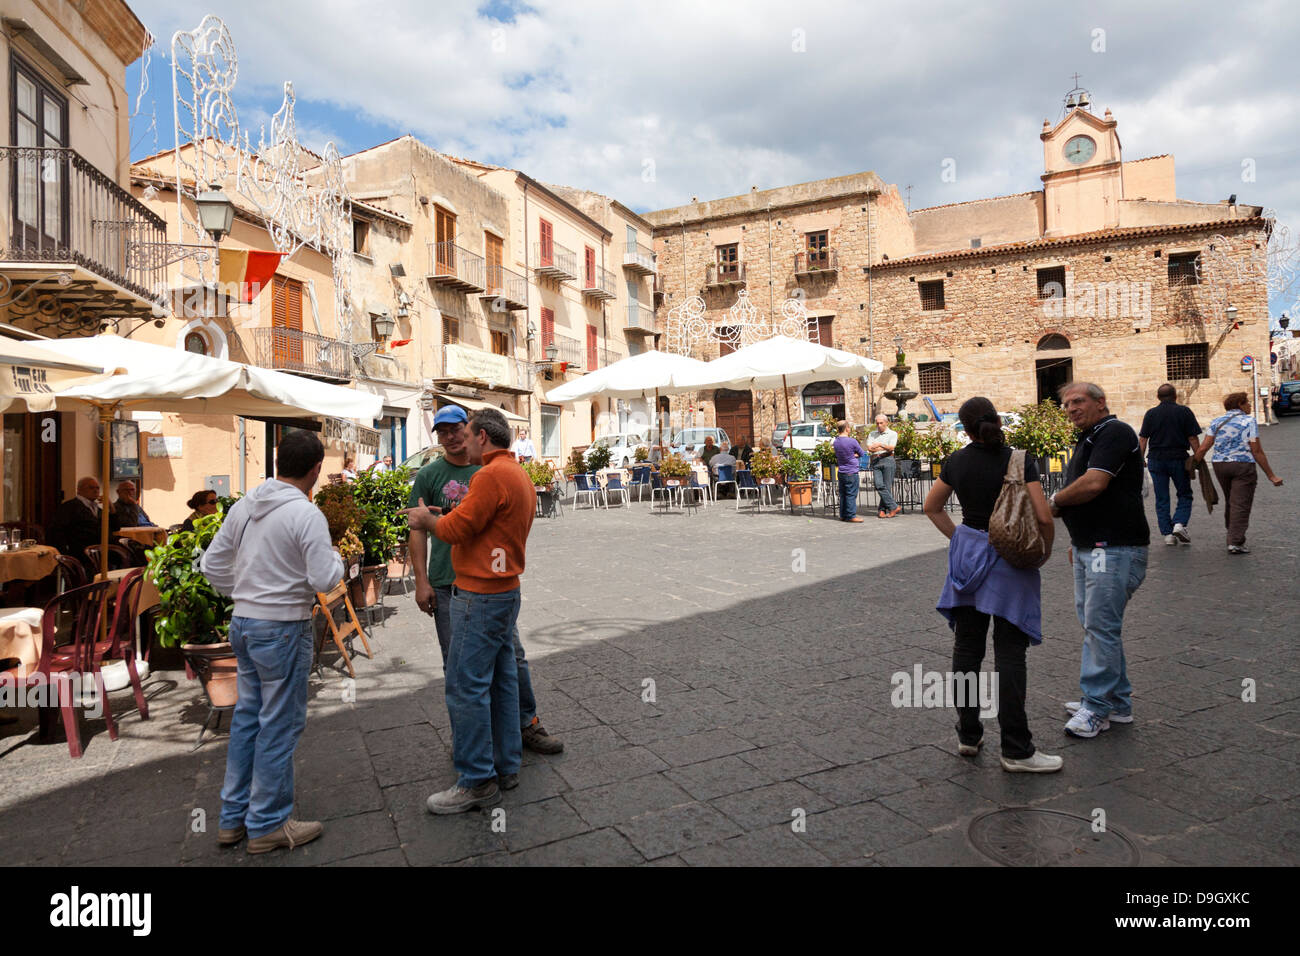 Piazza Margherita, Castelbuono, Sicily, Italy Stock Photo